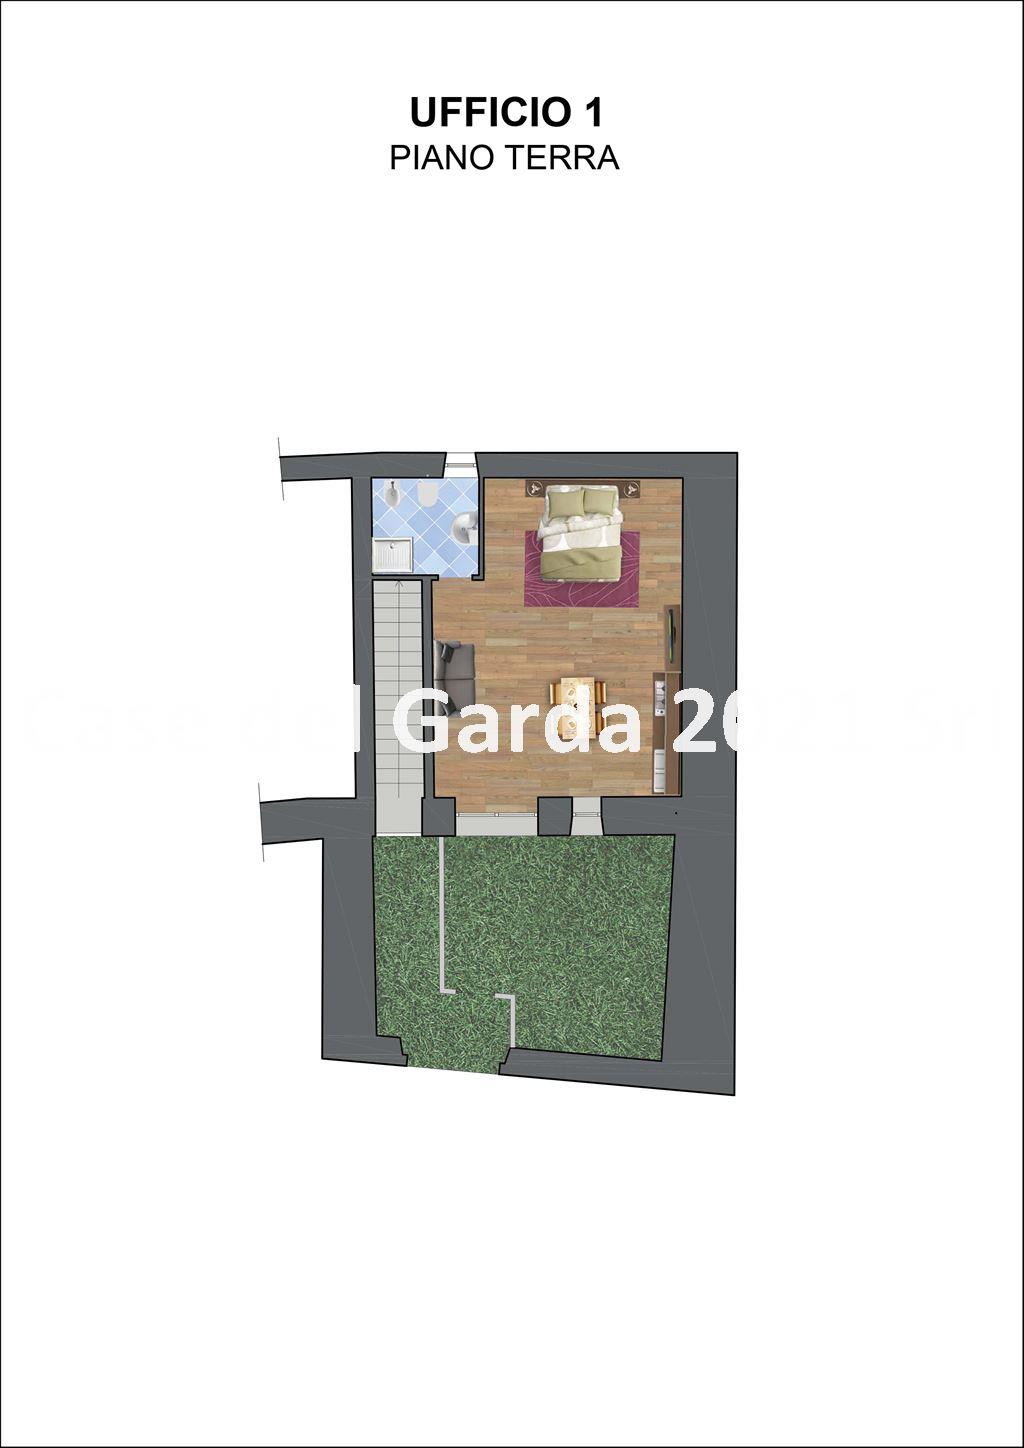 Vendita Loft Appartamento Desenzano del Garda Piazza Duomo 12 440653